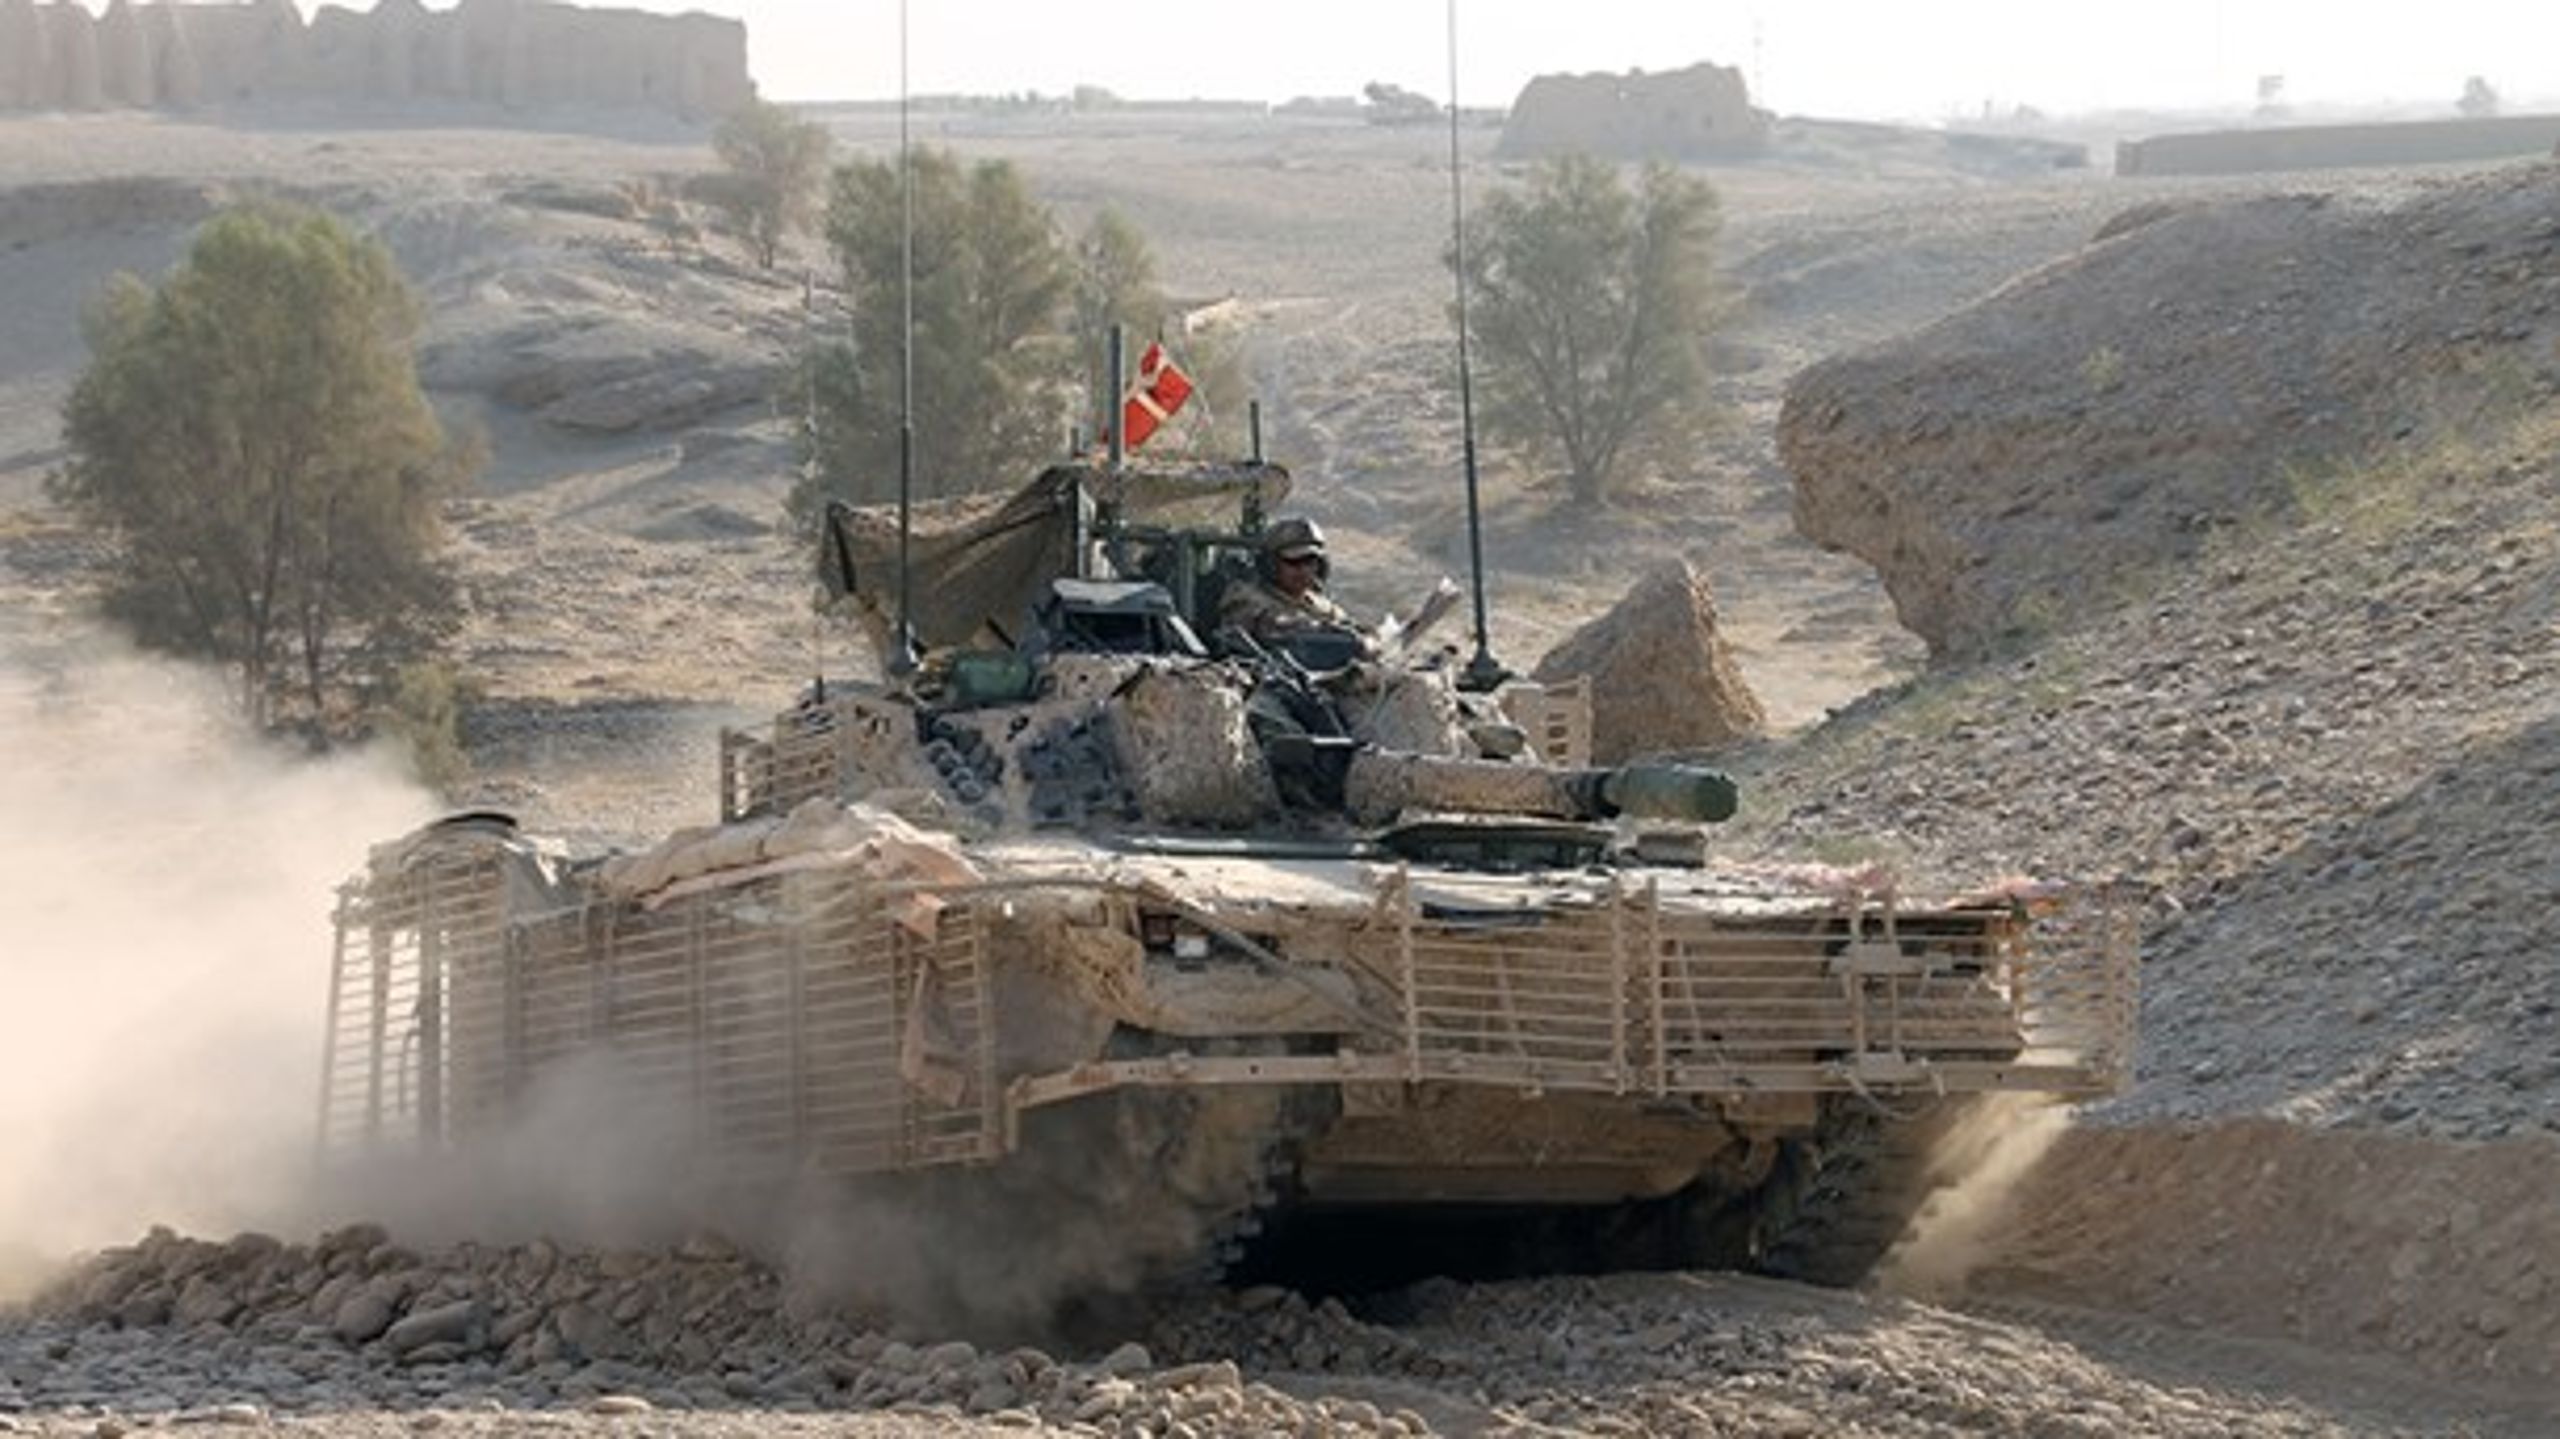 Et dansk CV9035 infanterikampkøretøj under en operation i Afghanistan i 2011.